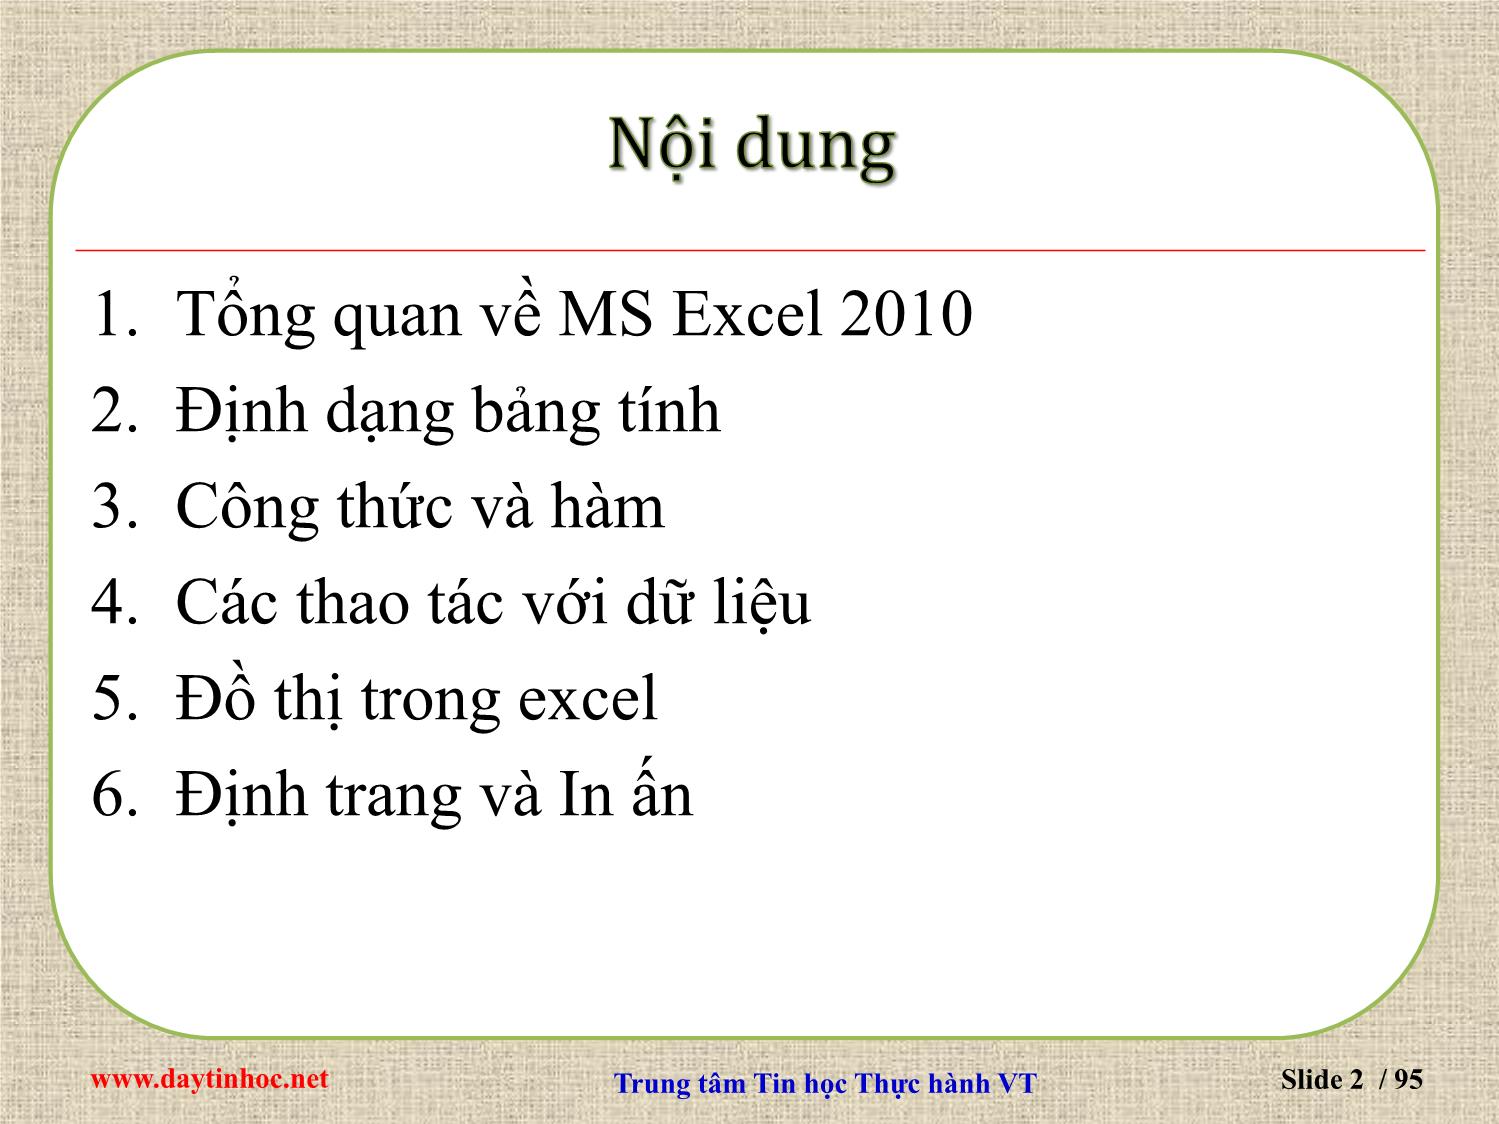 Bài giảng Microsoft Excel 2010 trang 2